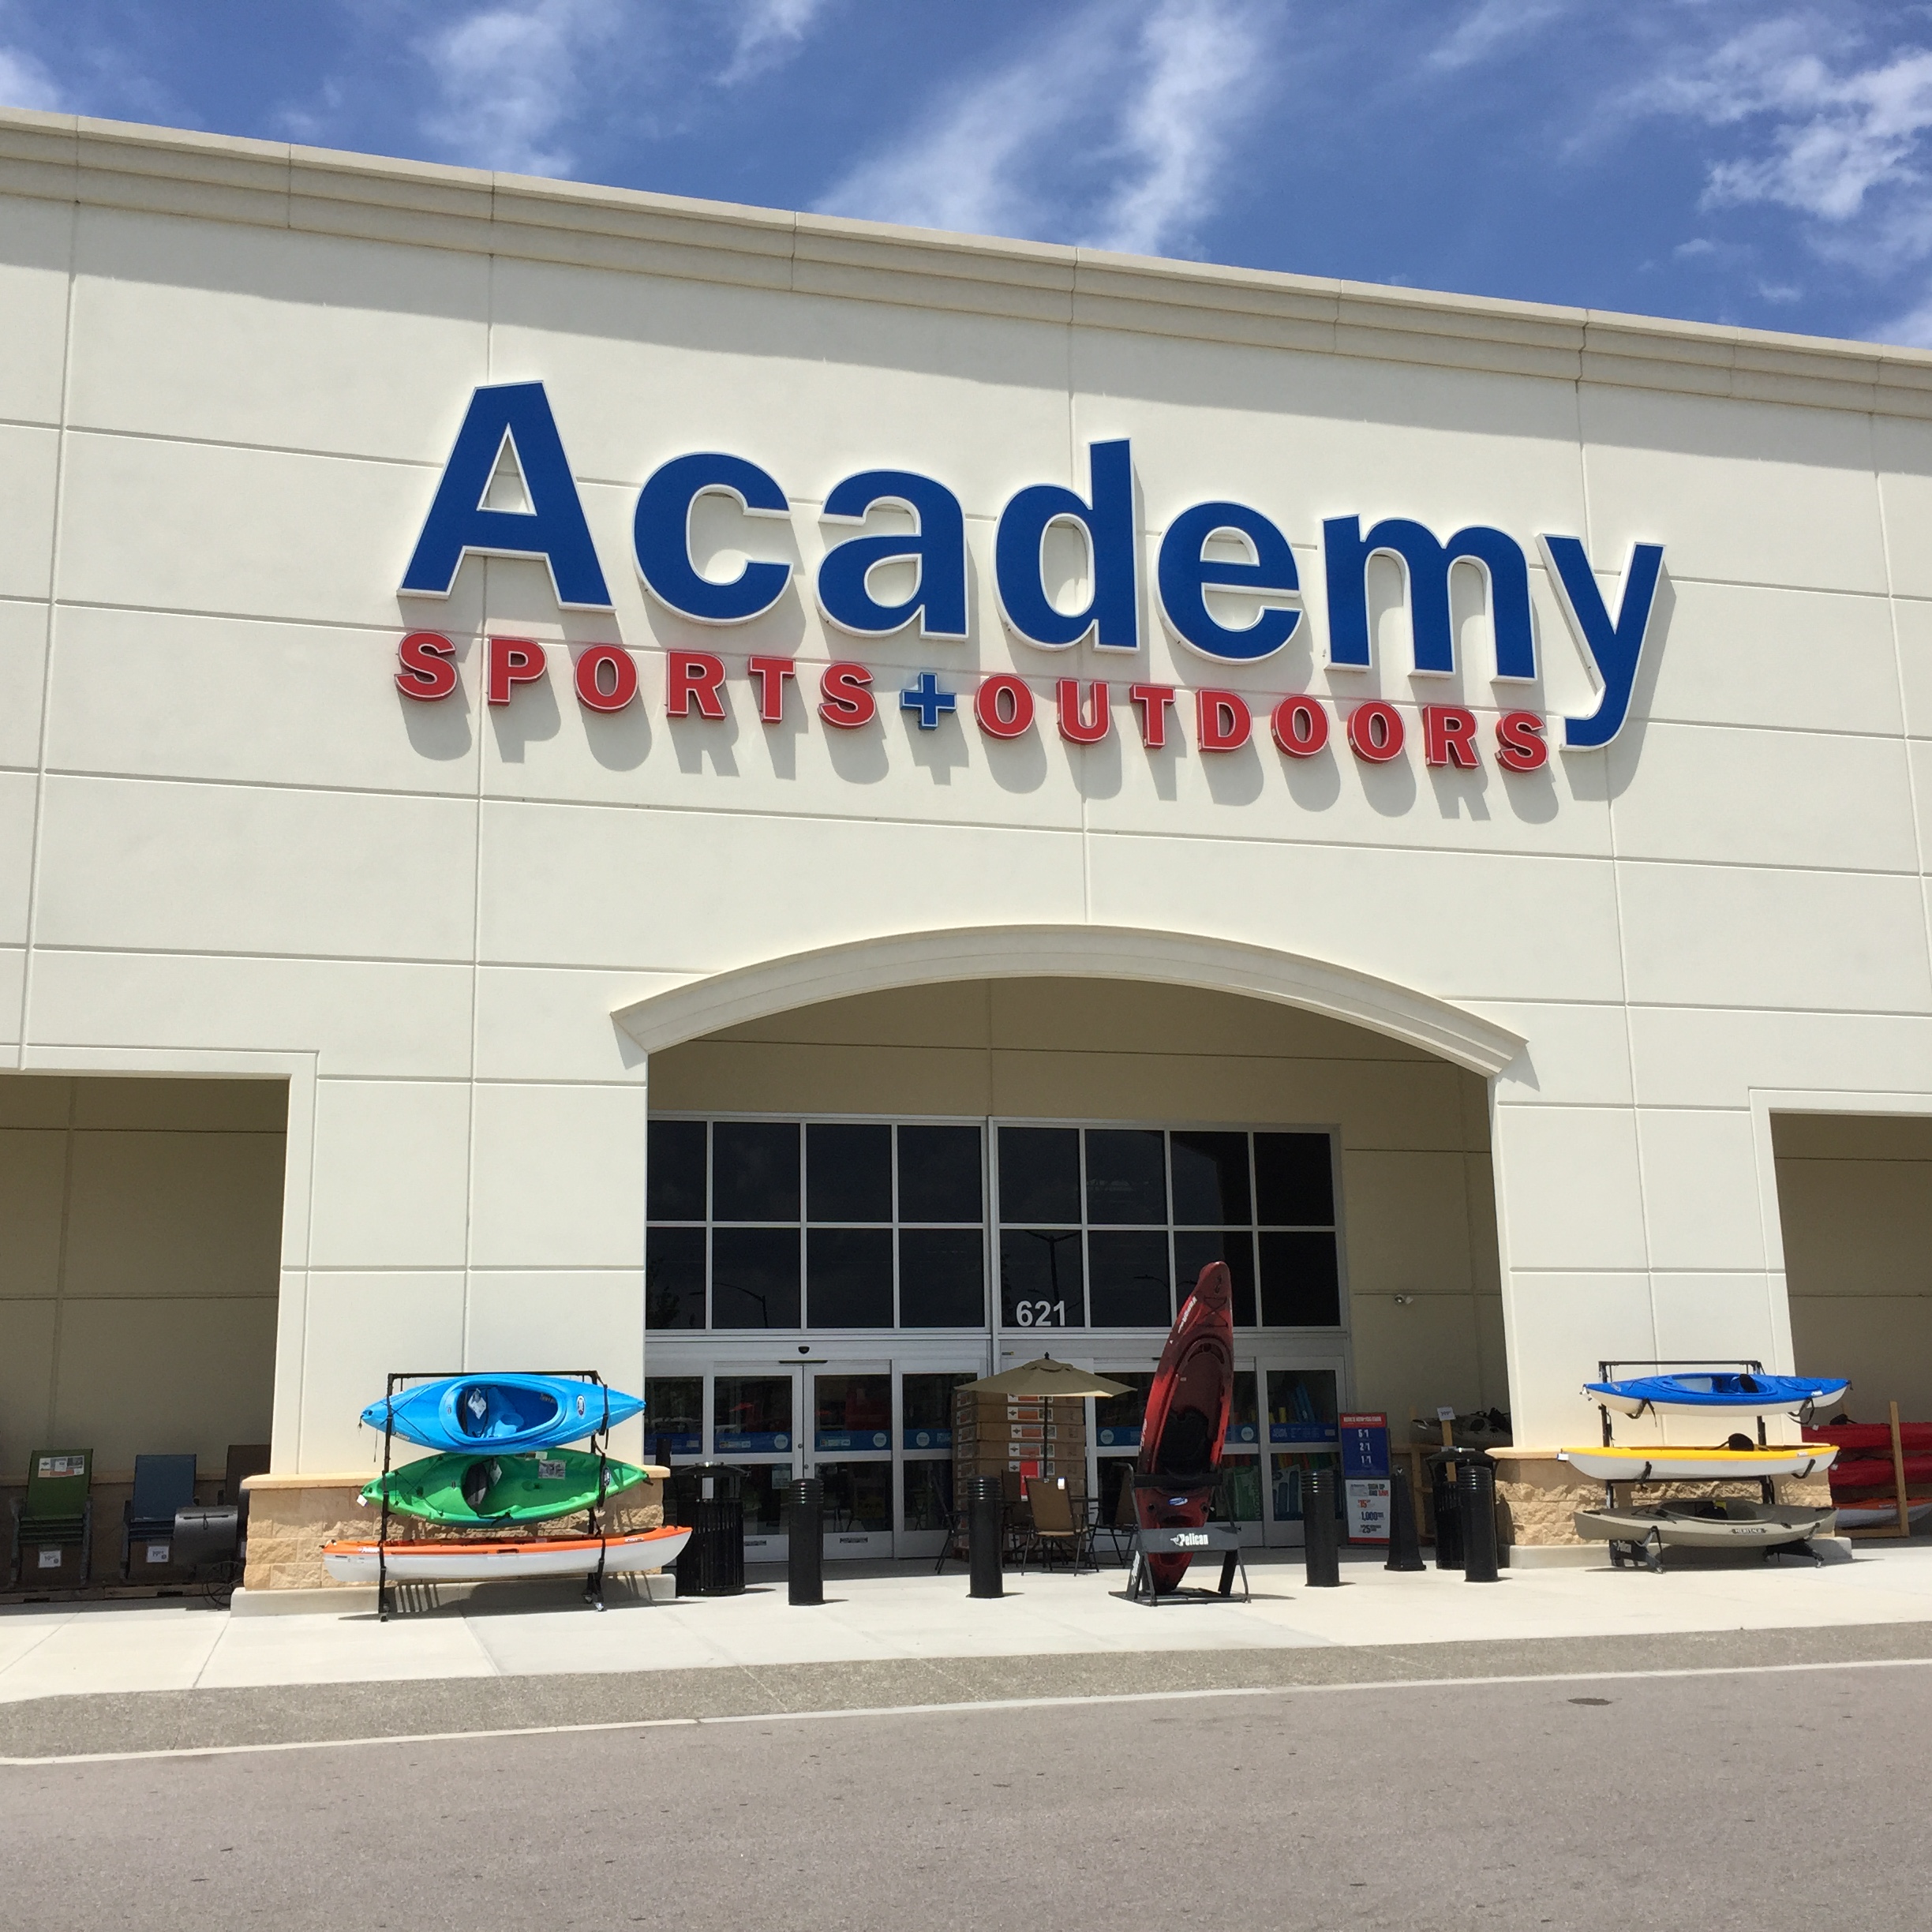 Sports Authority - loja de equipamentos esportivos em Orlando